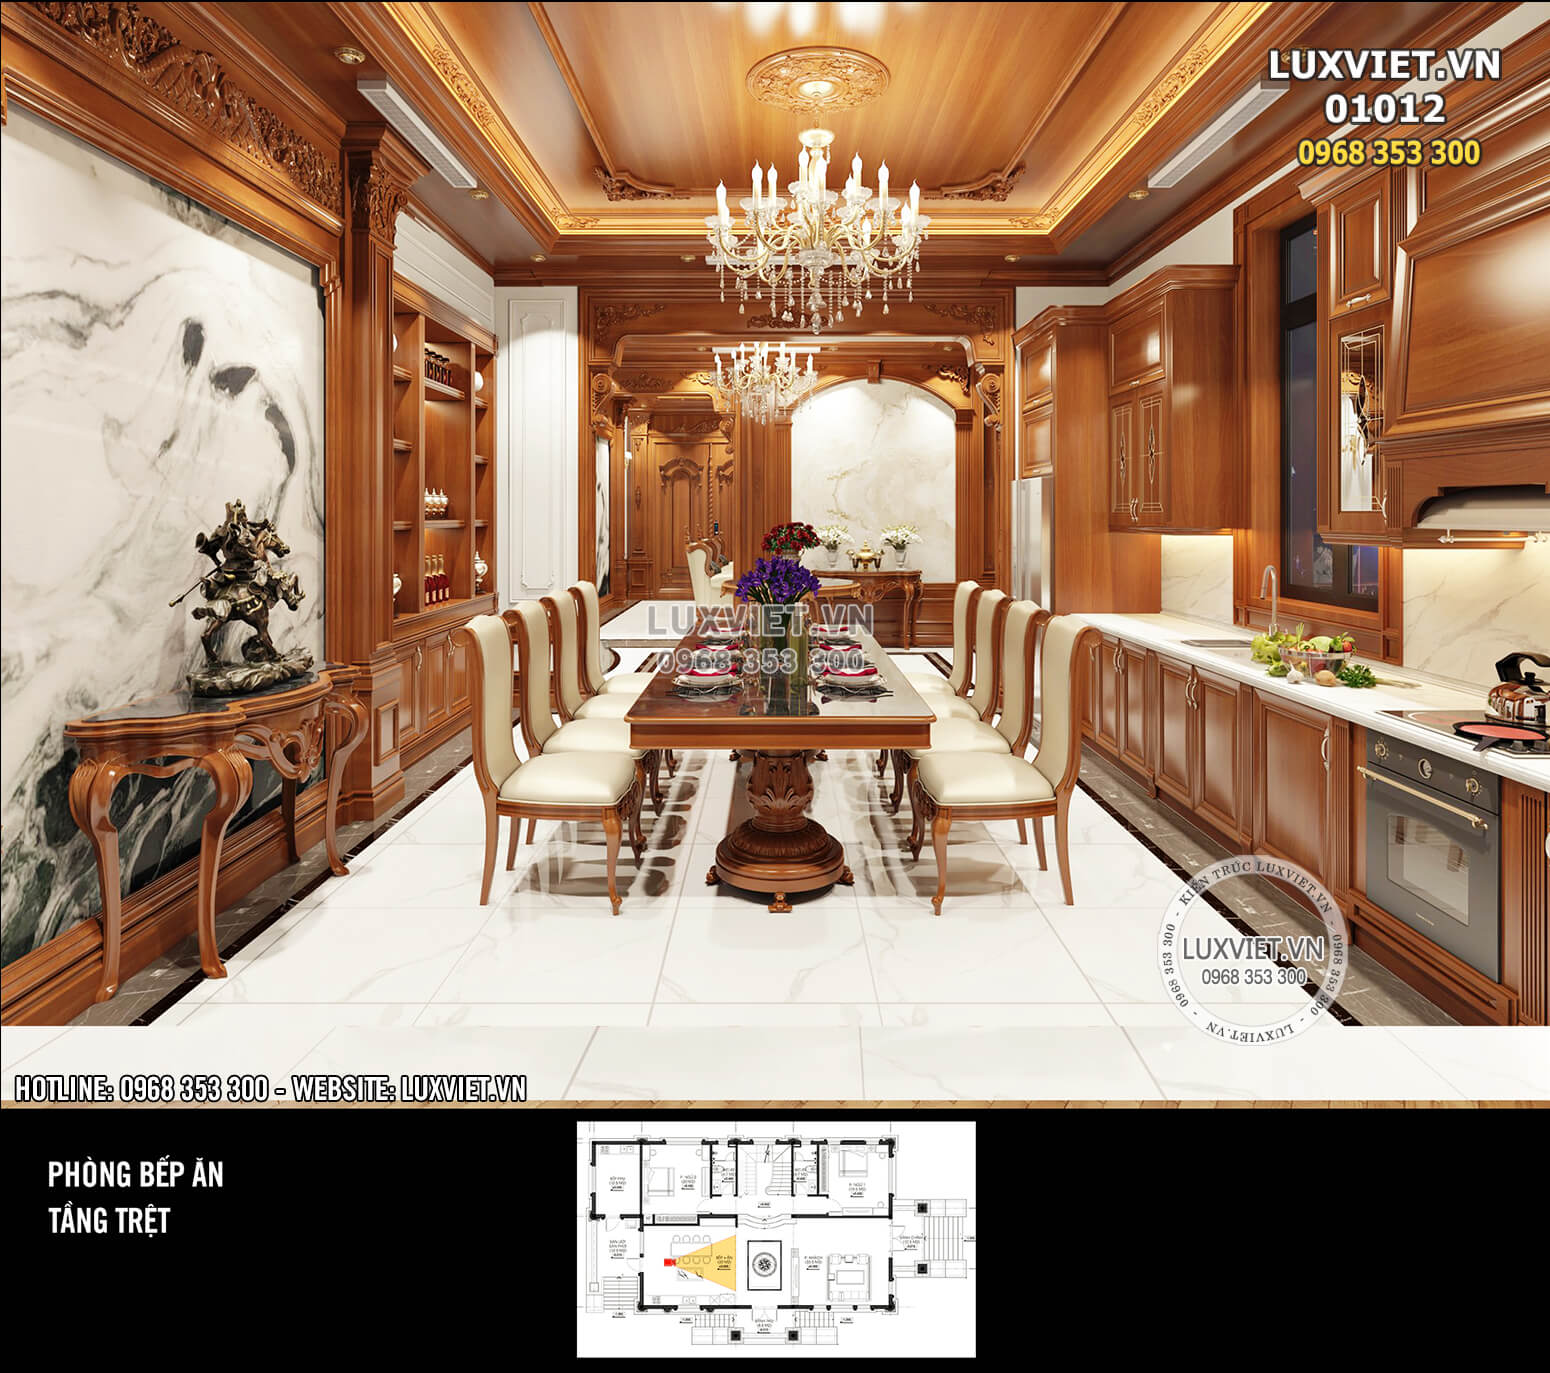 Hình ảnh: Hệ thống kệ tủ, tường, trần, đèn chùm tạo nên không gian phòng bếp ăn ấm cúng - nội thất ốp gỗ tân cổ điển